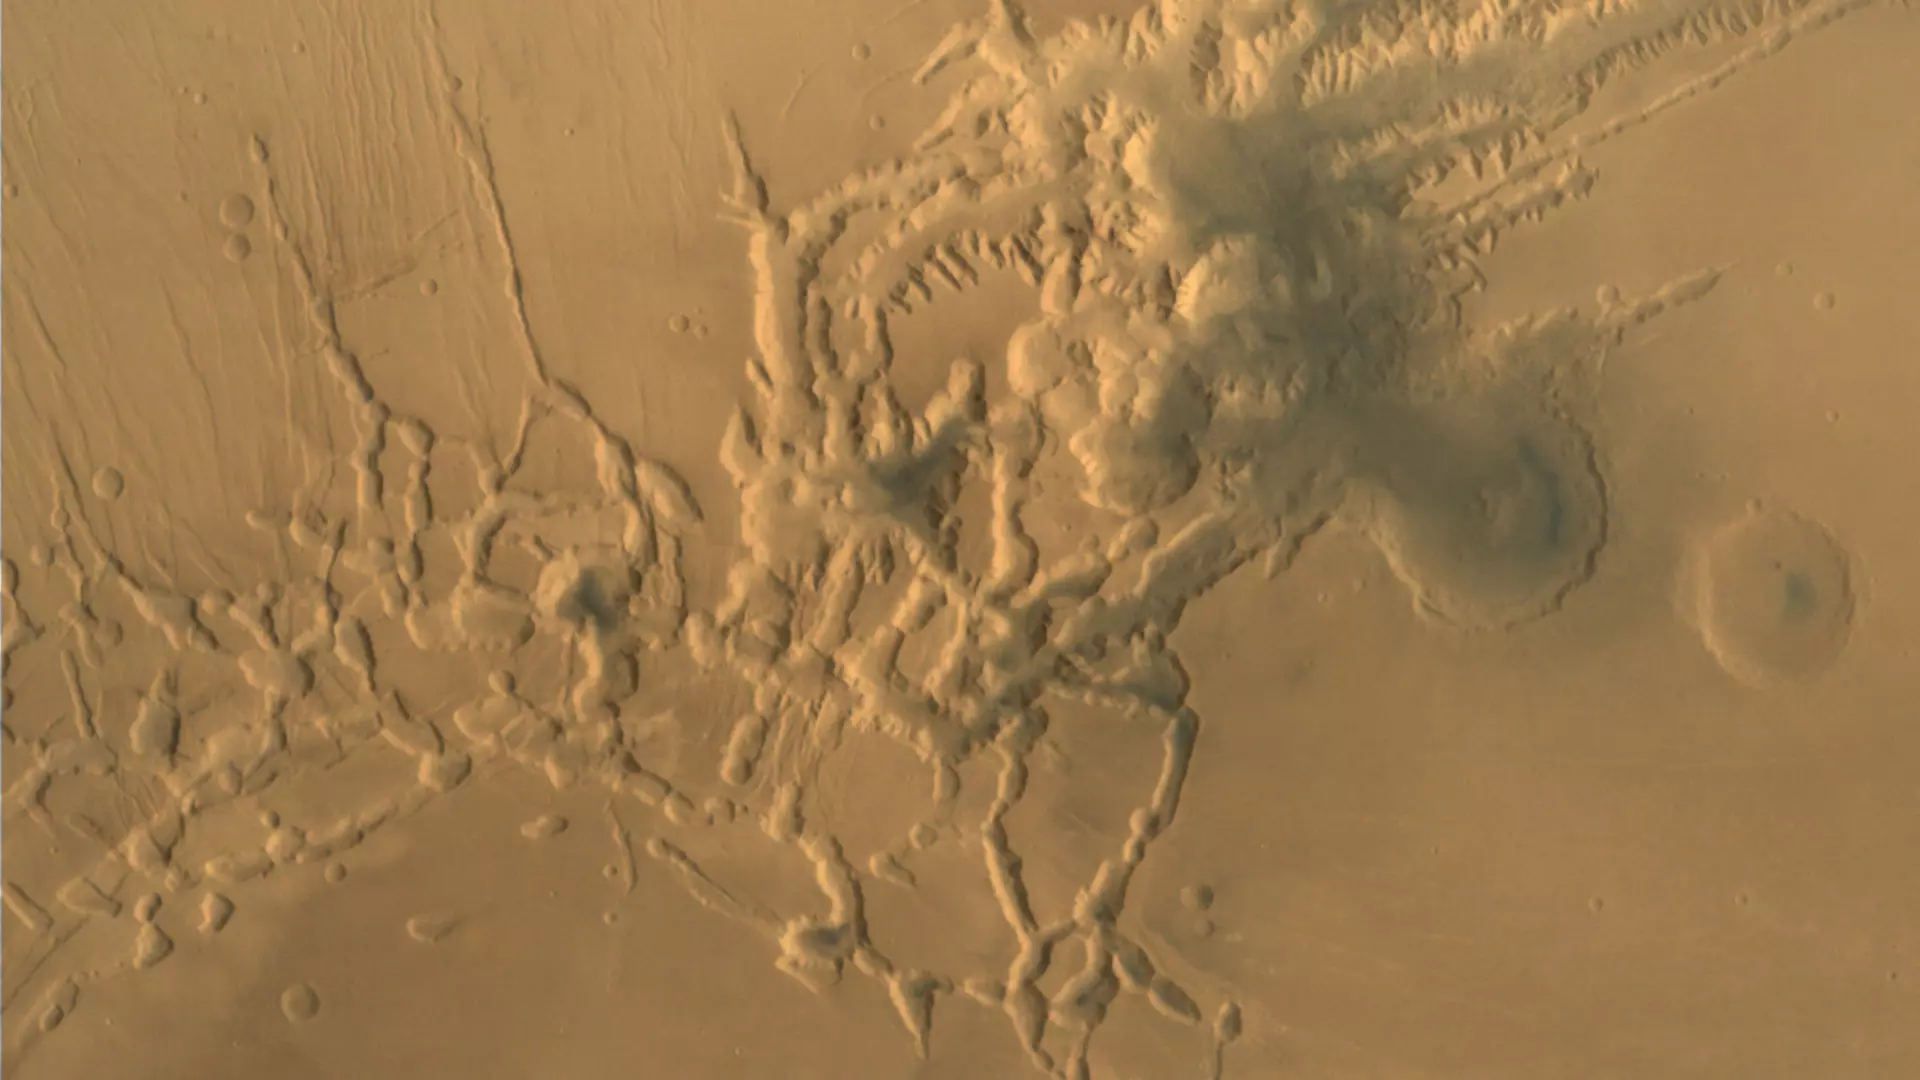 El 20 de enero de 2015, la misión Mars Orbiter tomó esta imagen de Noctis Labyrinthus, el extremo occidental del extenso complejo Valles Marineris.